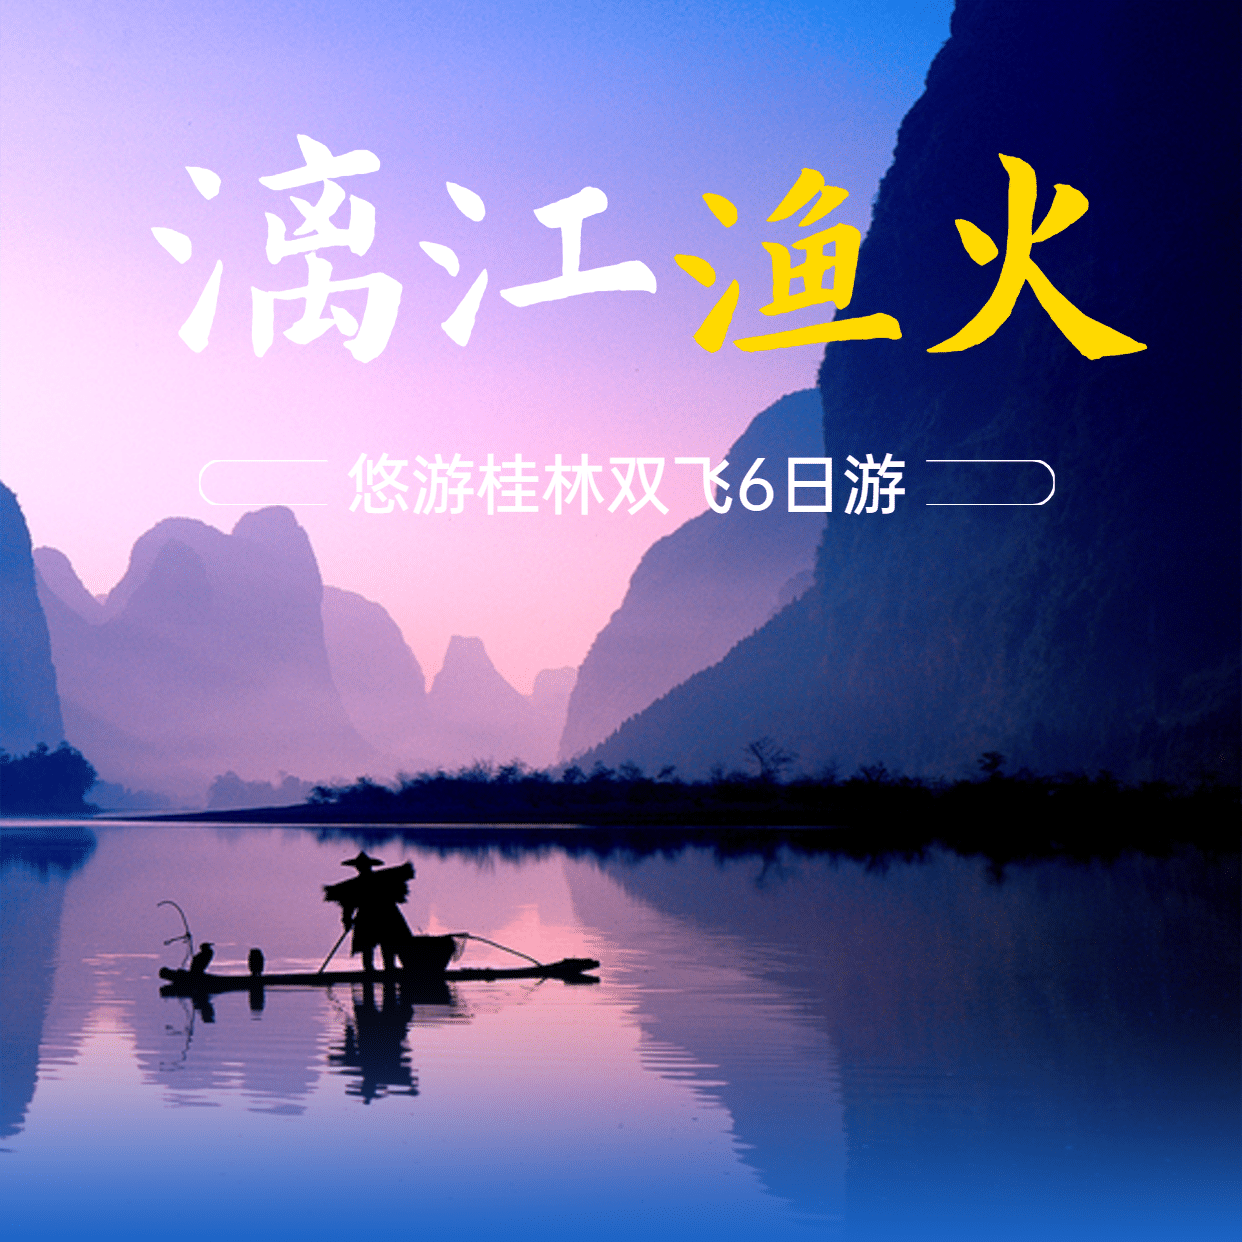 桂林山水山野名胜景点旅游实景海报